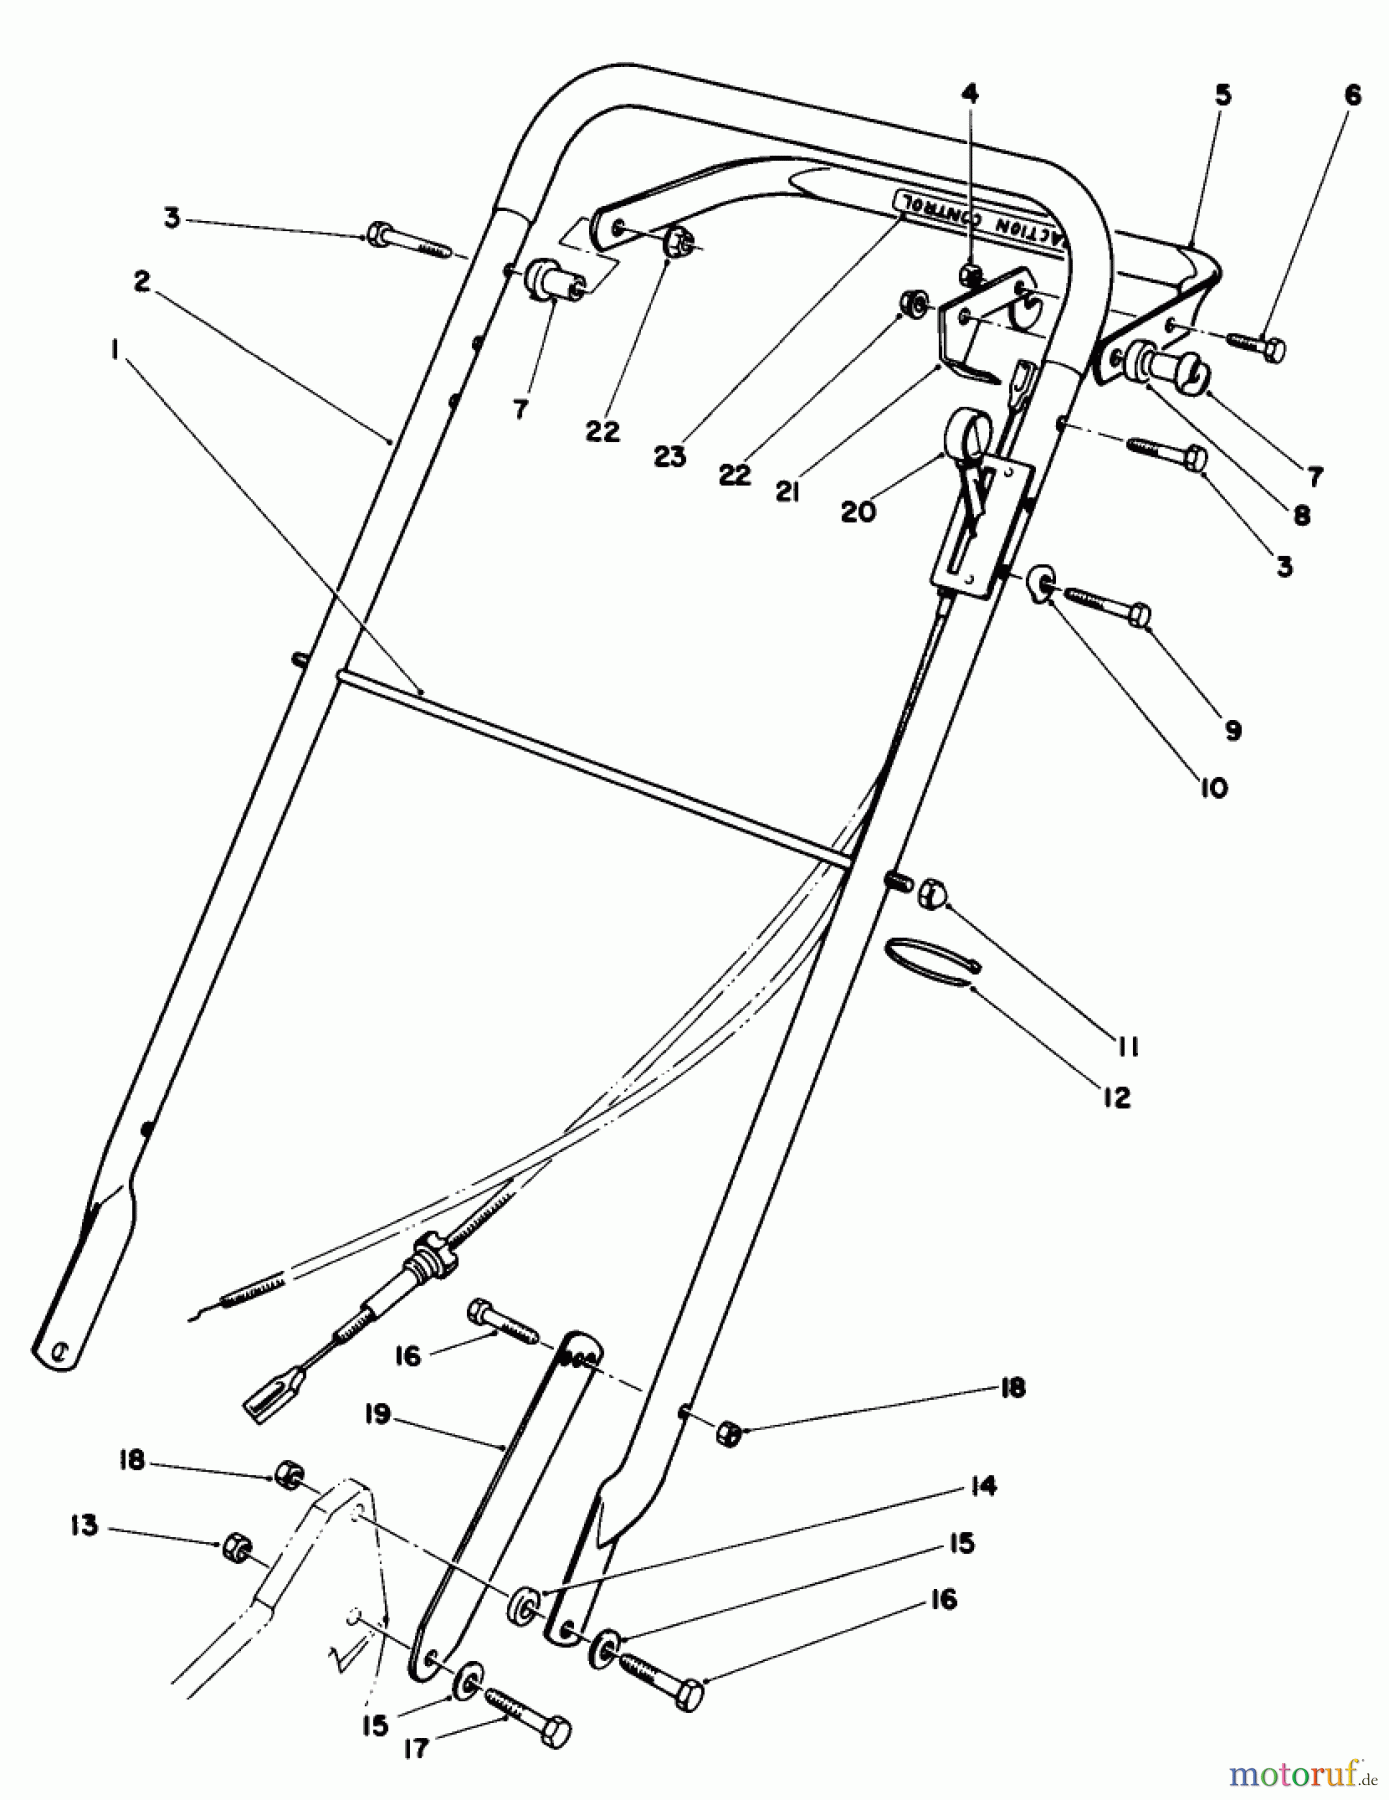  Toro Neu Mowers, Walk-Behind Seite 2 22035 - Toro Lawnmower, 1988 (8000001-8002989) HANDLE ASSEMBLY (MODEL 22035)